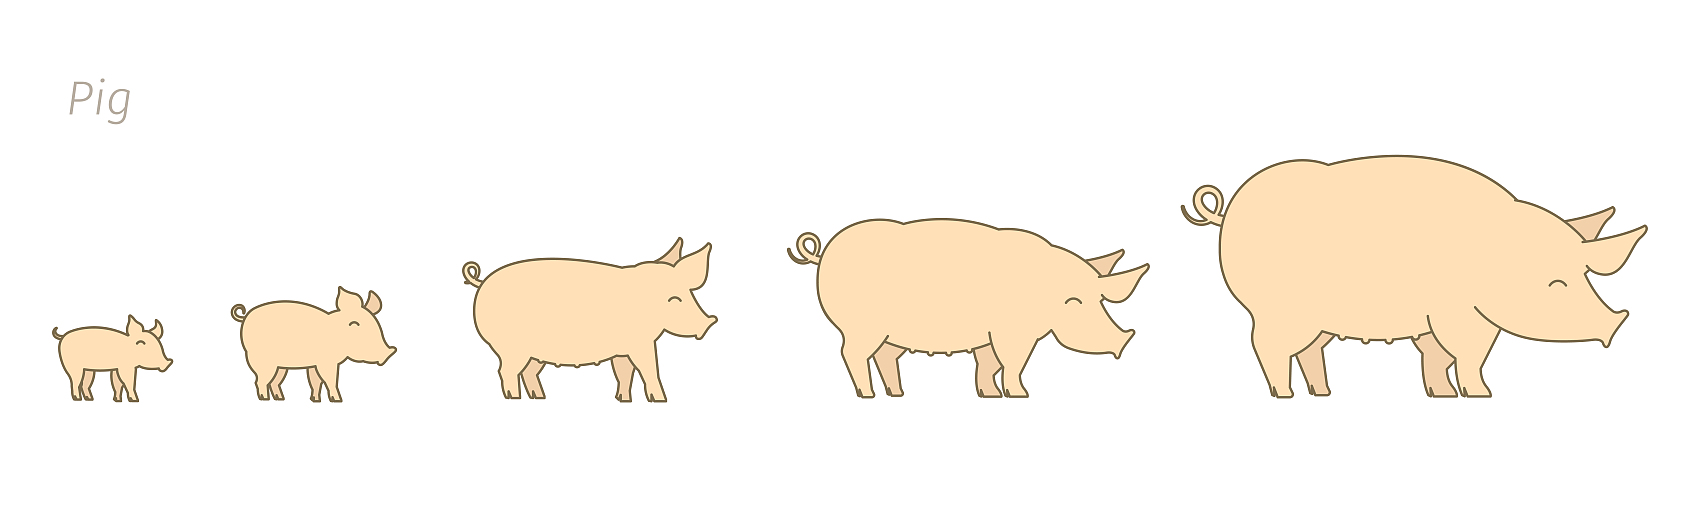 Schweine in verschiedenen Wachstumsstadien